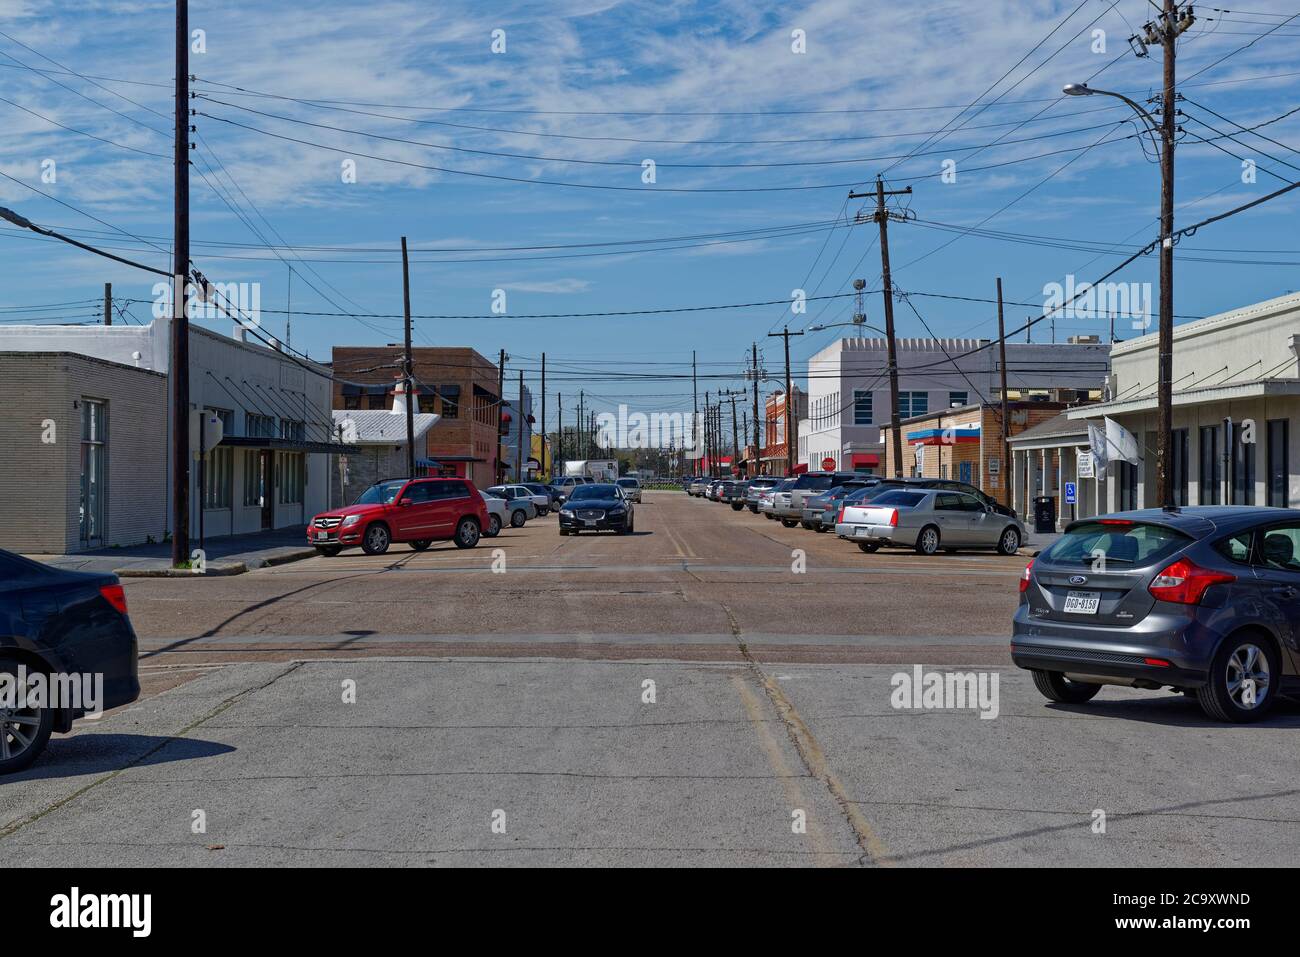 Guardando lungo una strada diritta a Rosenberg, Texas, con auto parcheggiate, e una Jaguar Car sulla strada in una giornata di sole a marzo. Foto Stock